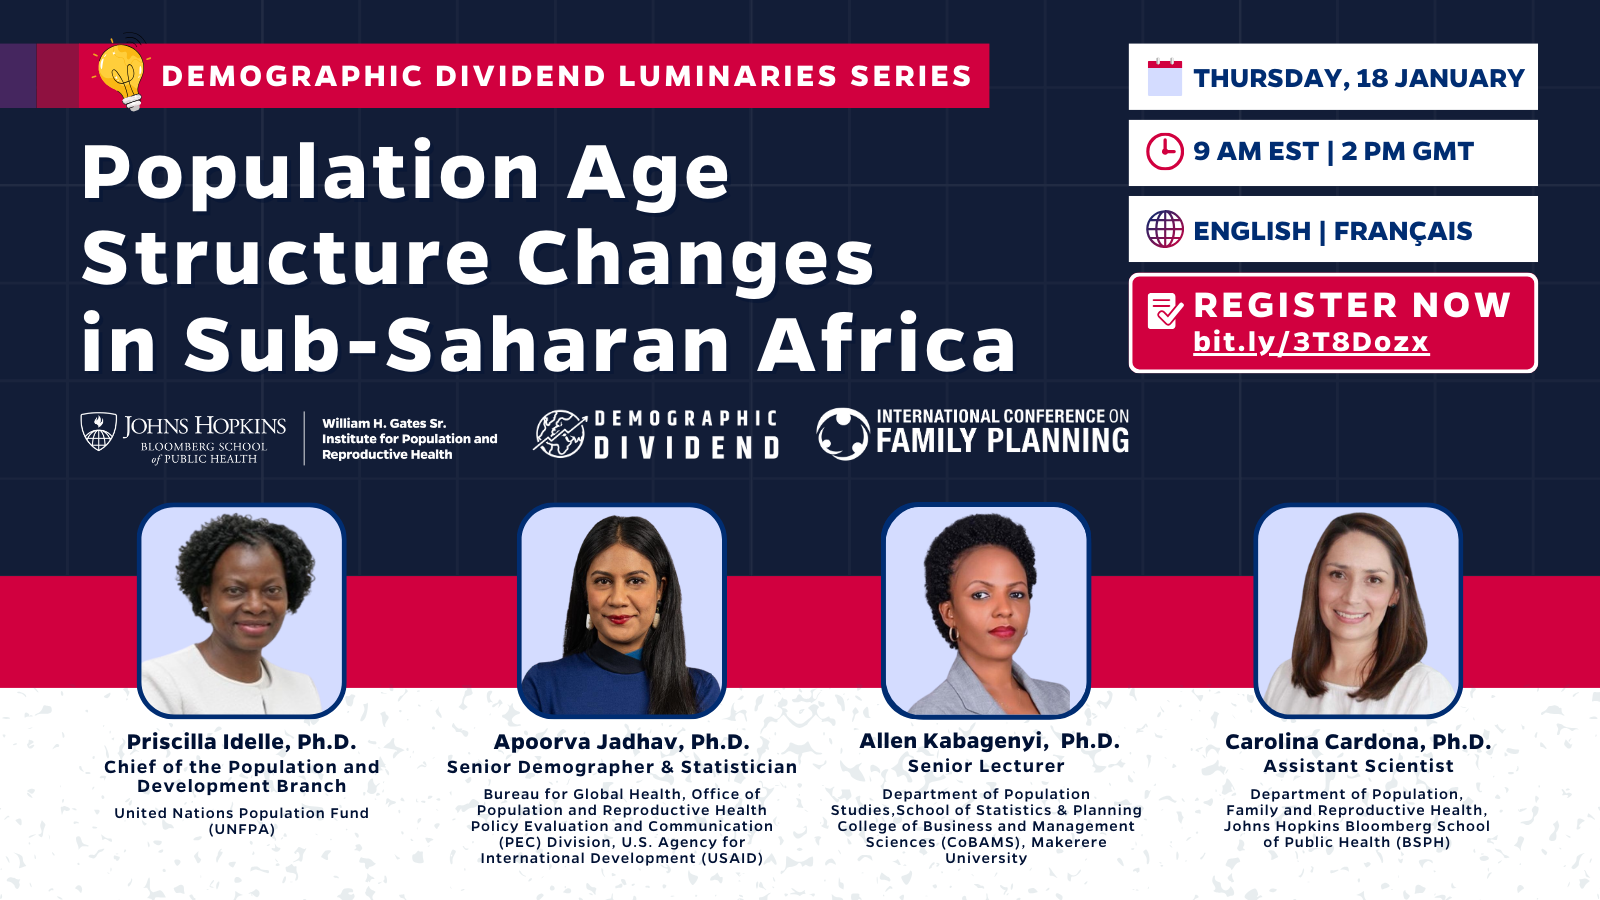 REGÍSTRESE AHORA: Webinar sobre el dividendo demográfico y los cambios en la estructura por edades de la población en el África subsahariana